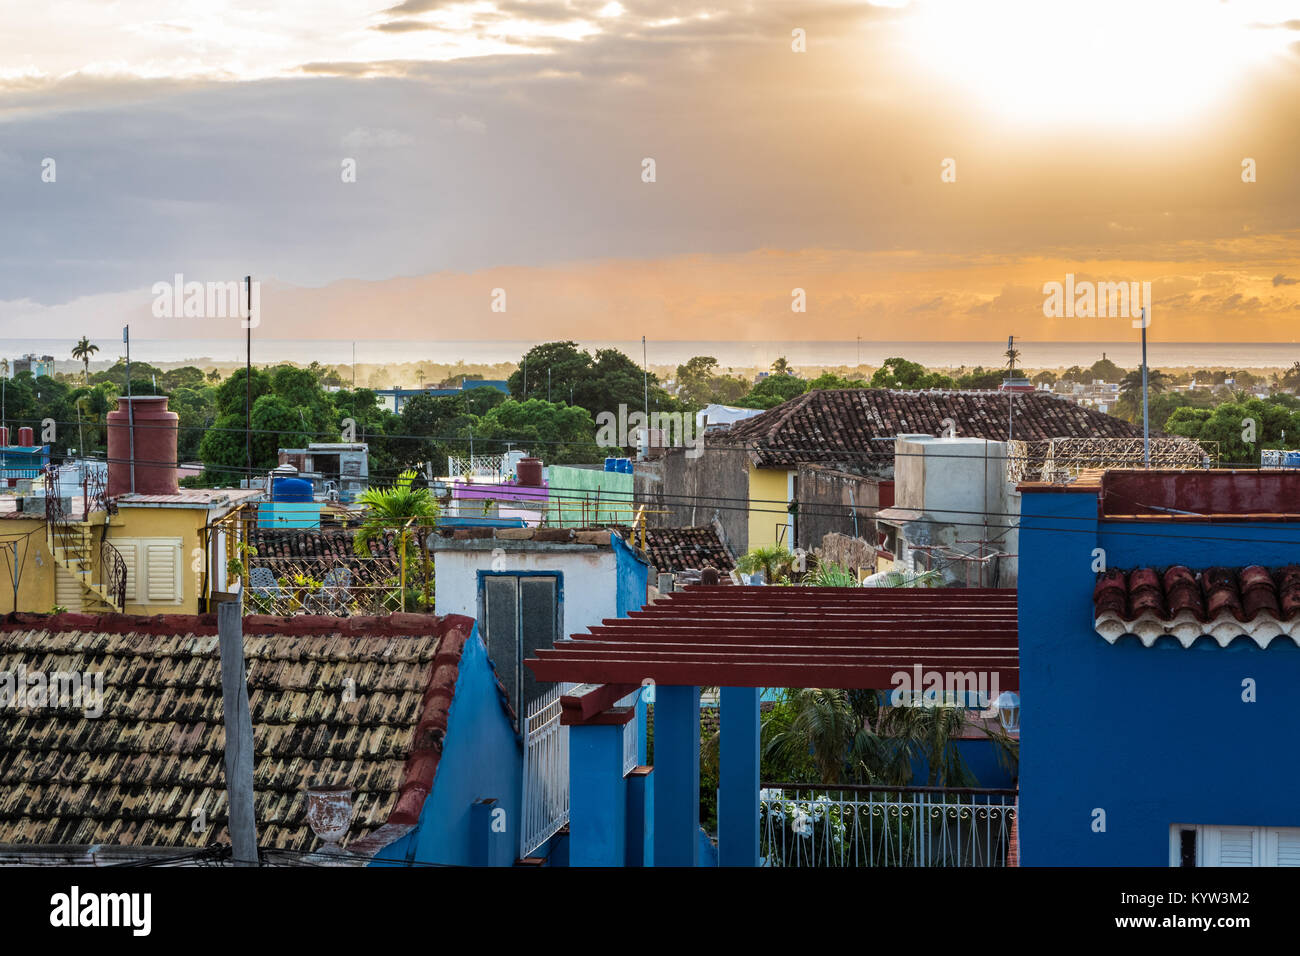 Streetview von Trinidad Kuba, sonnigen Tag, schöne Gebäude - Stockfoto